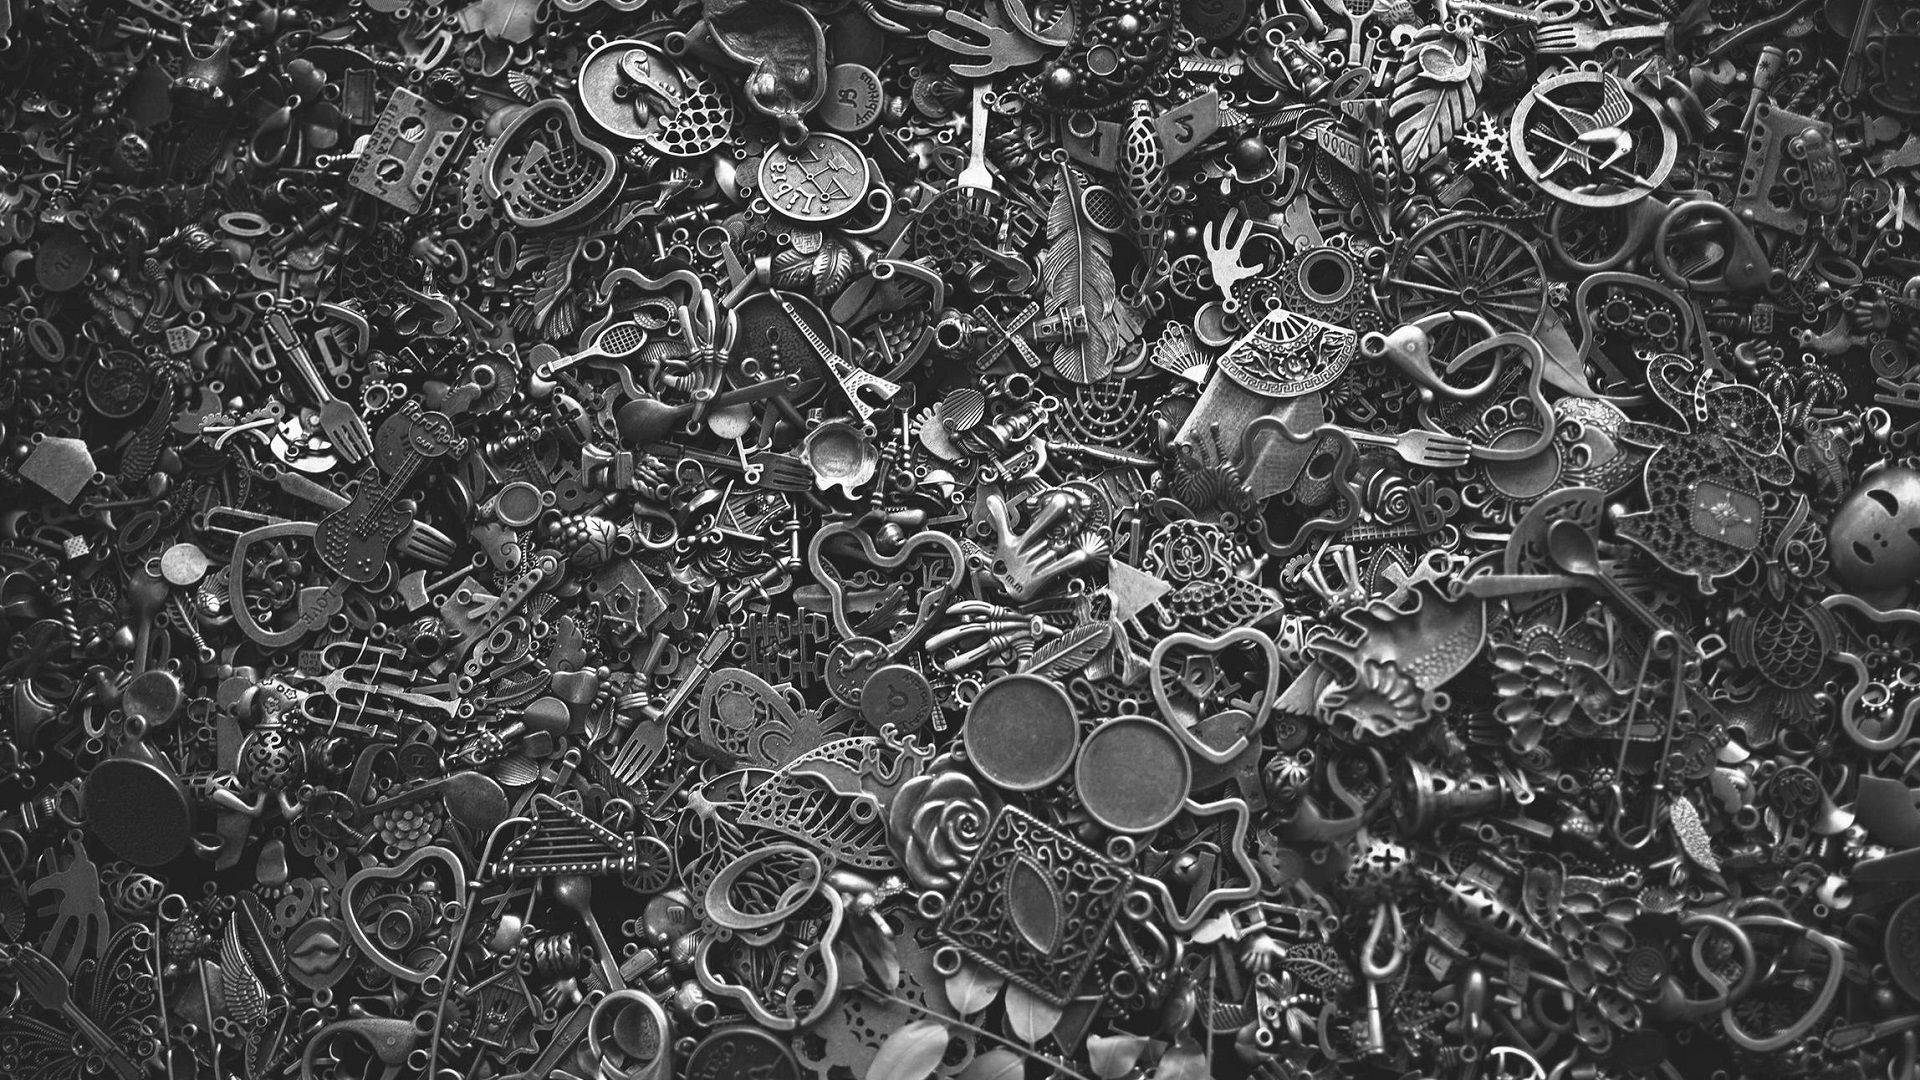 Metal Love Keyrings 1920x1080